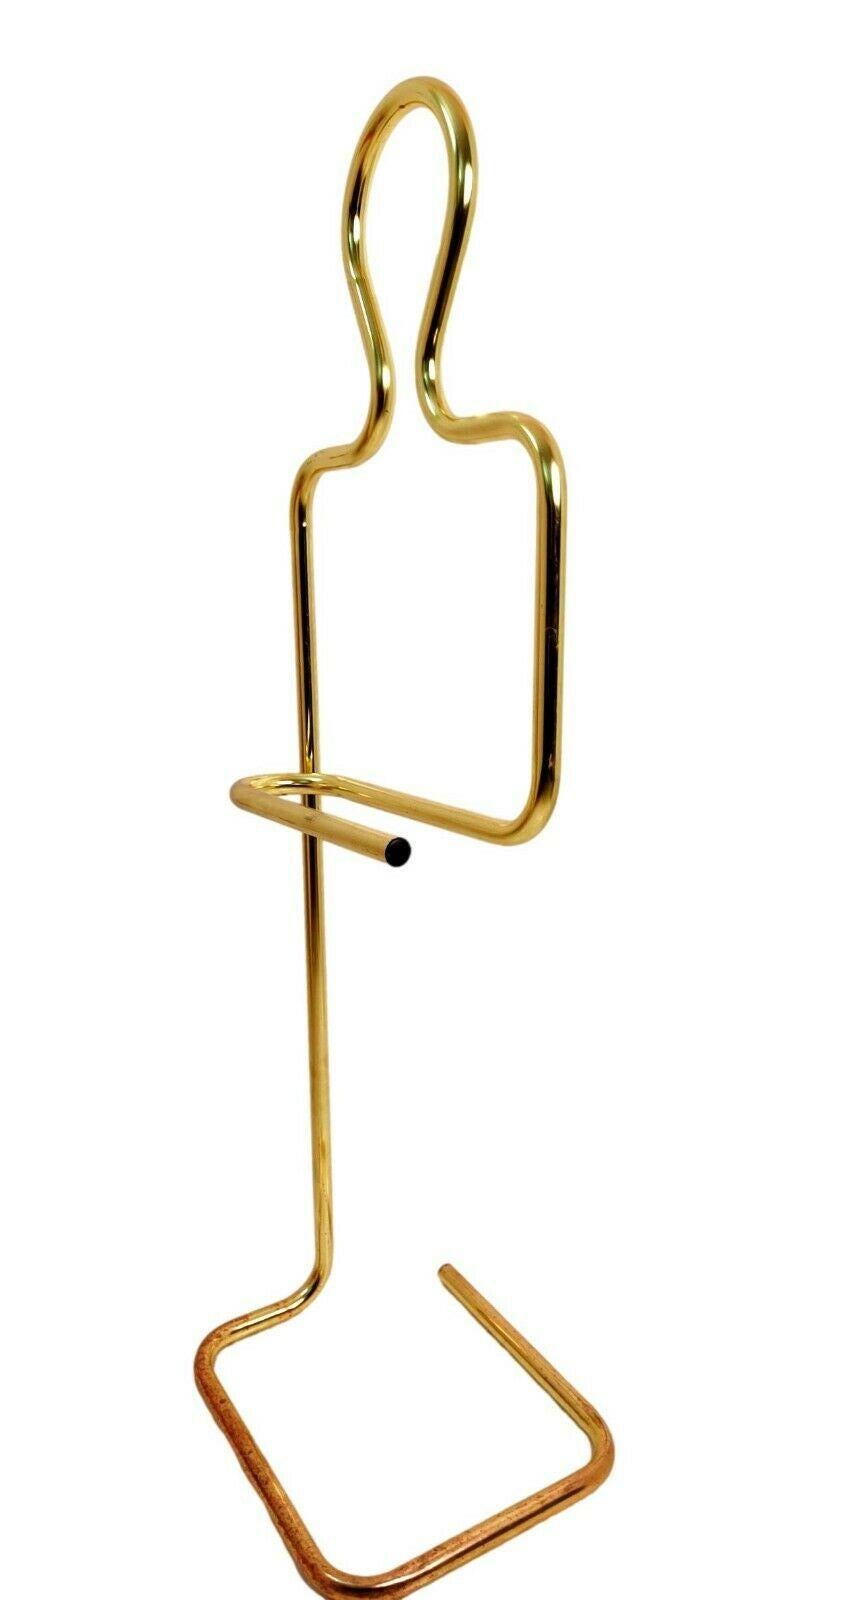 Italian Coat Hanger Valet Stan in Gold Metal Design Pierre Cardin, 1970s